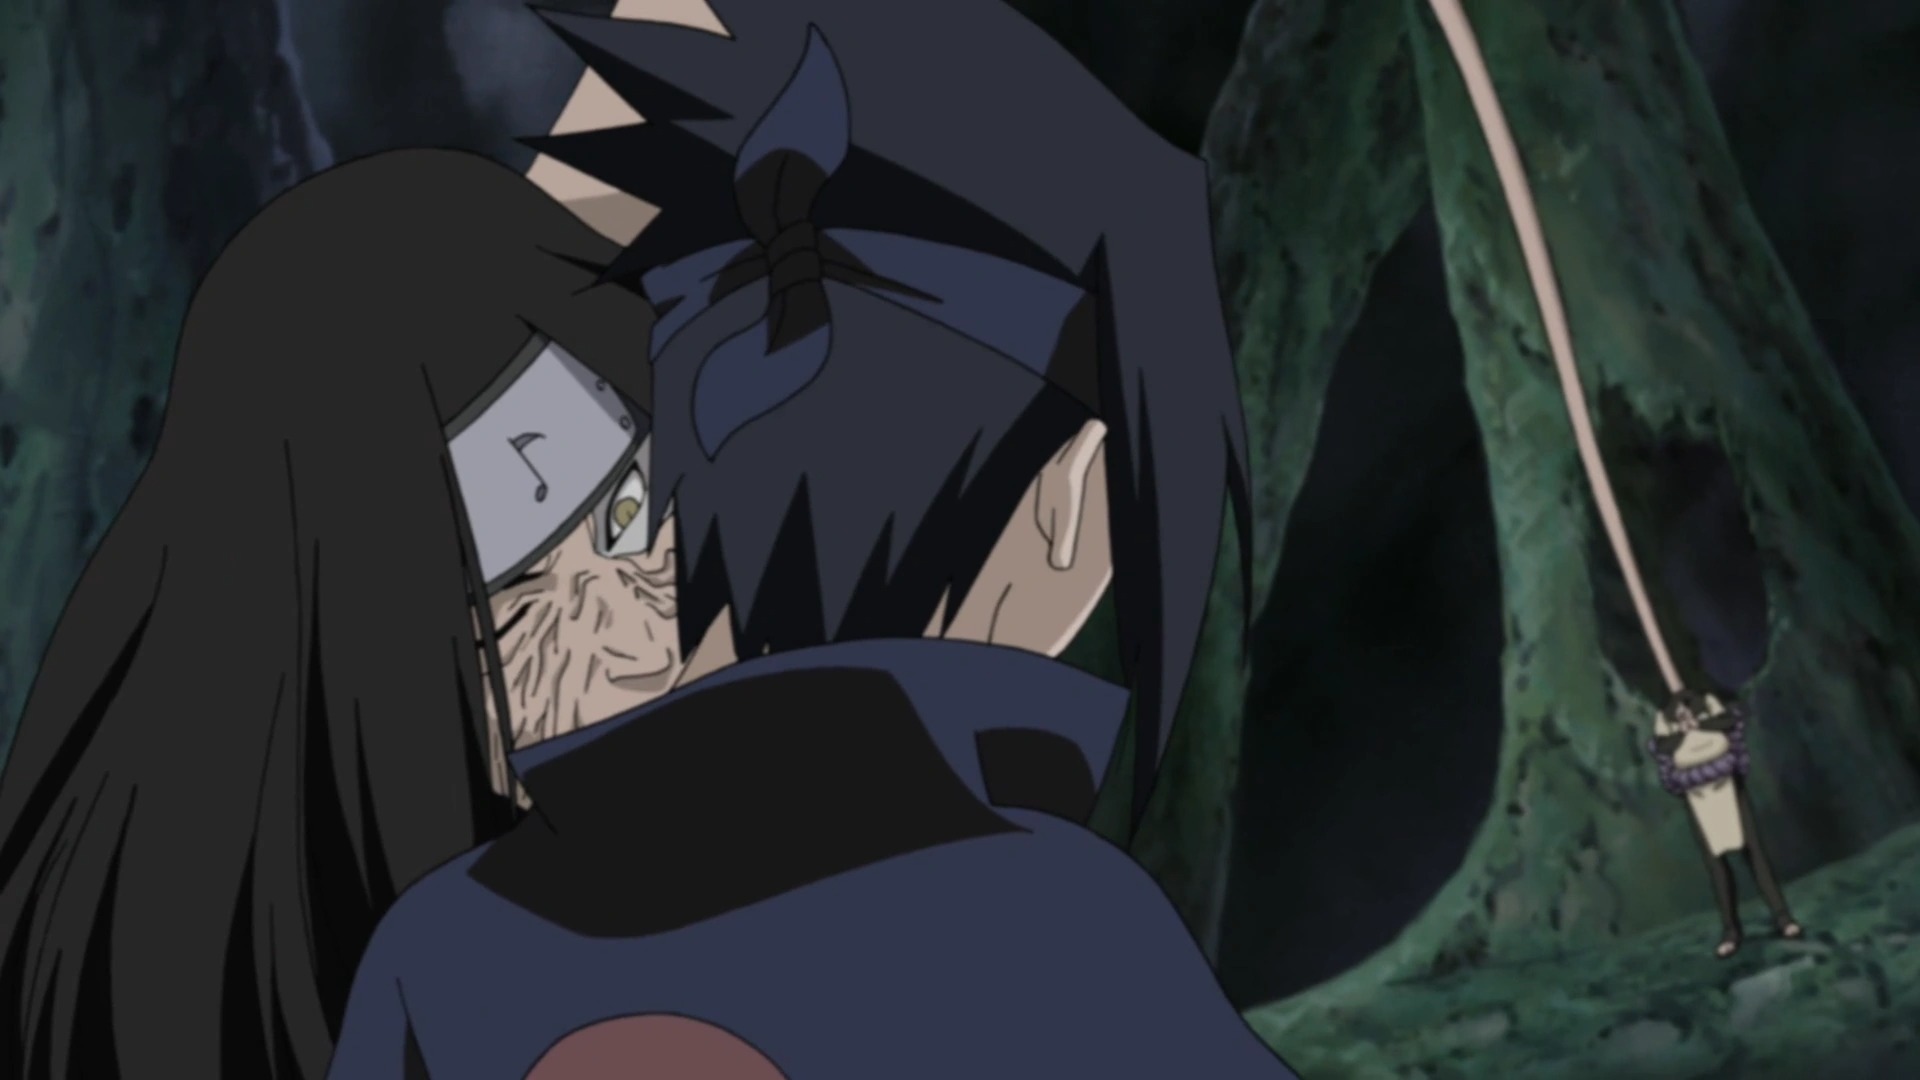 Naruto Clássico - Em qual episódio Sasuke e Naruto lutam